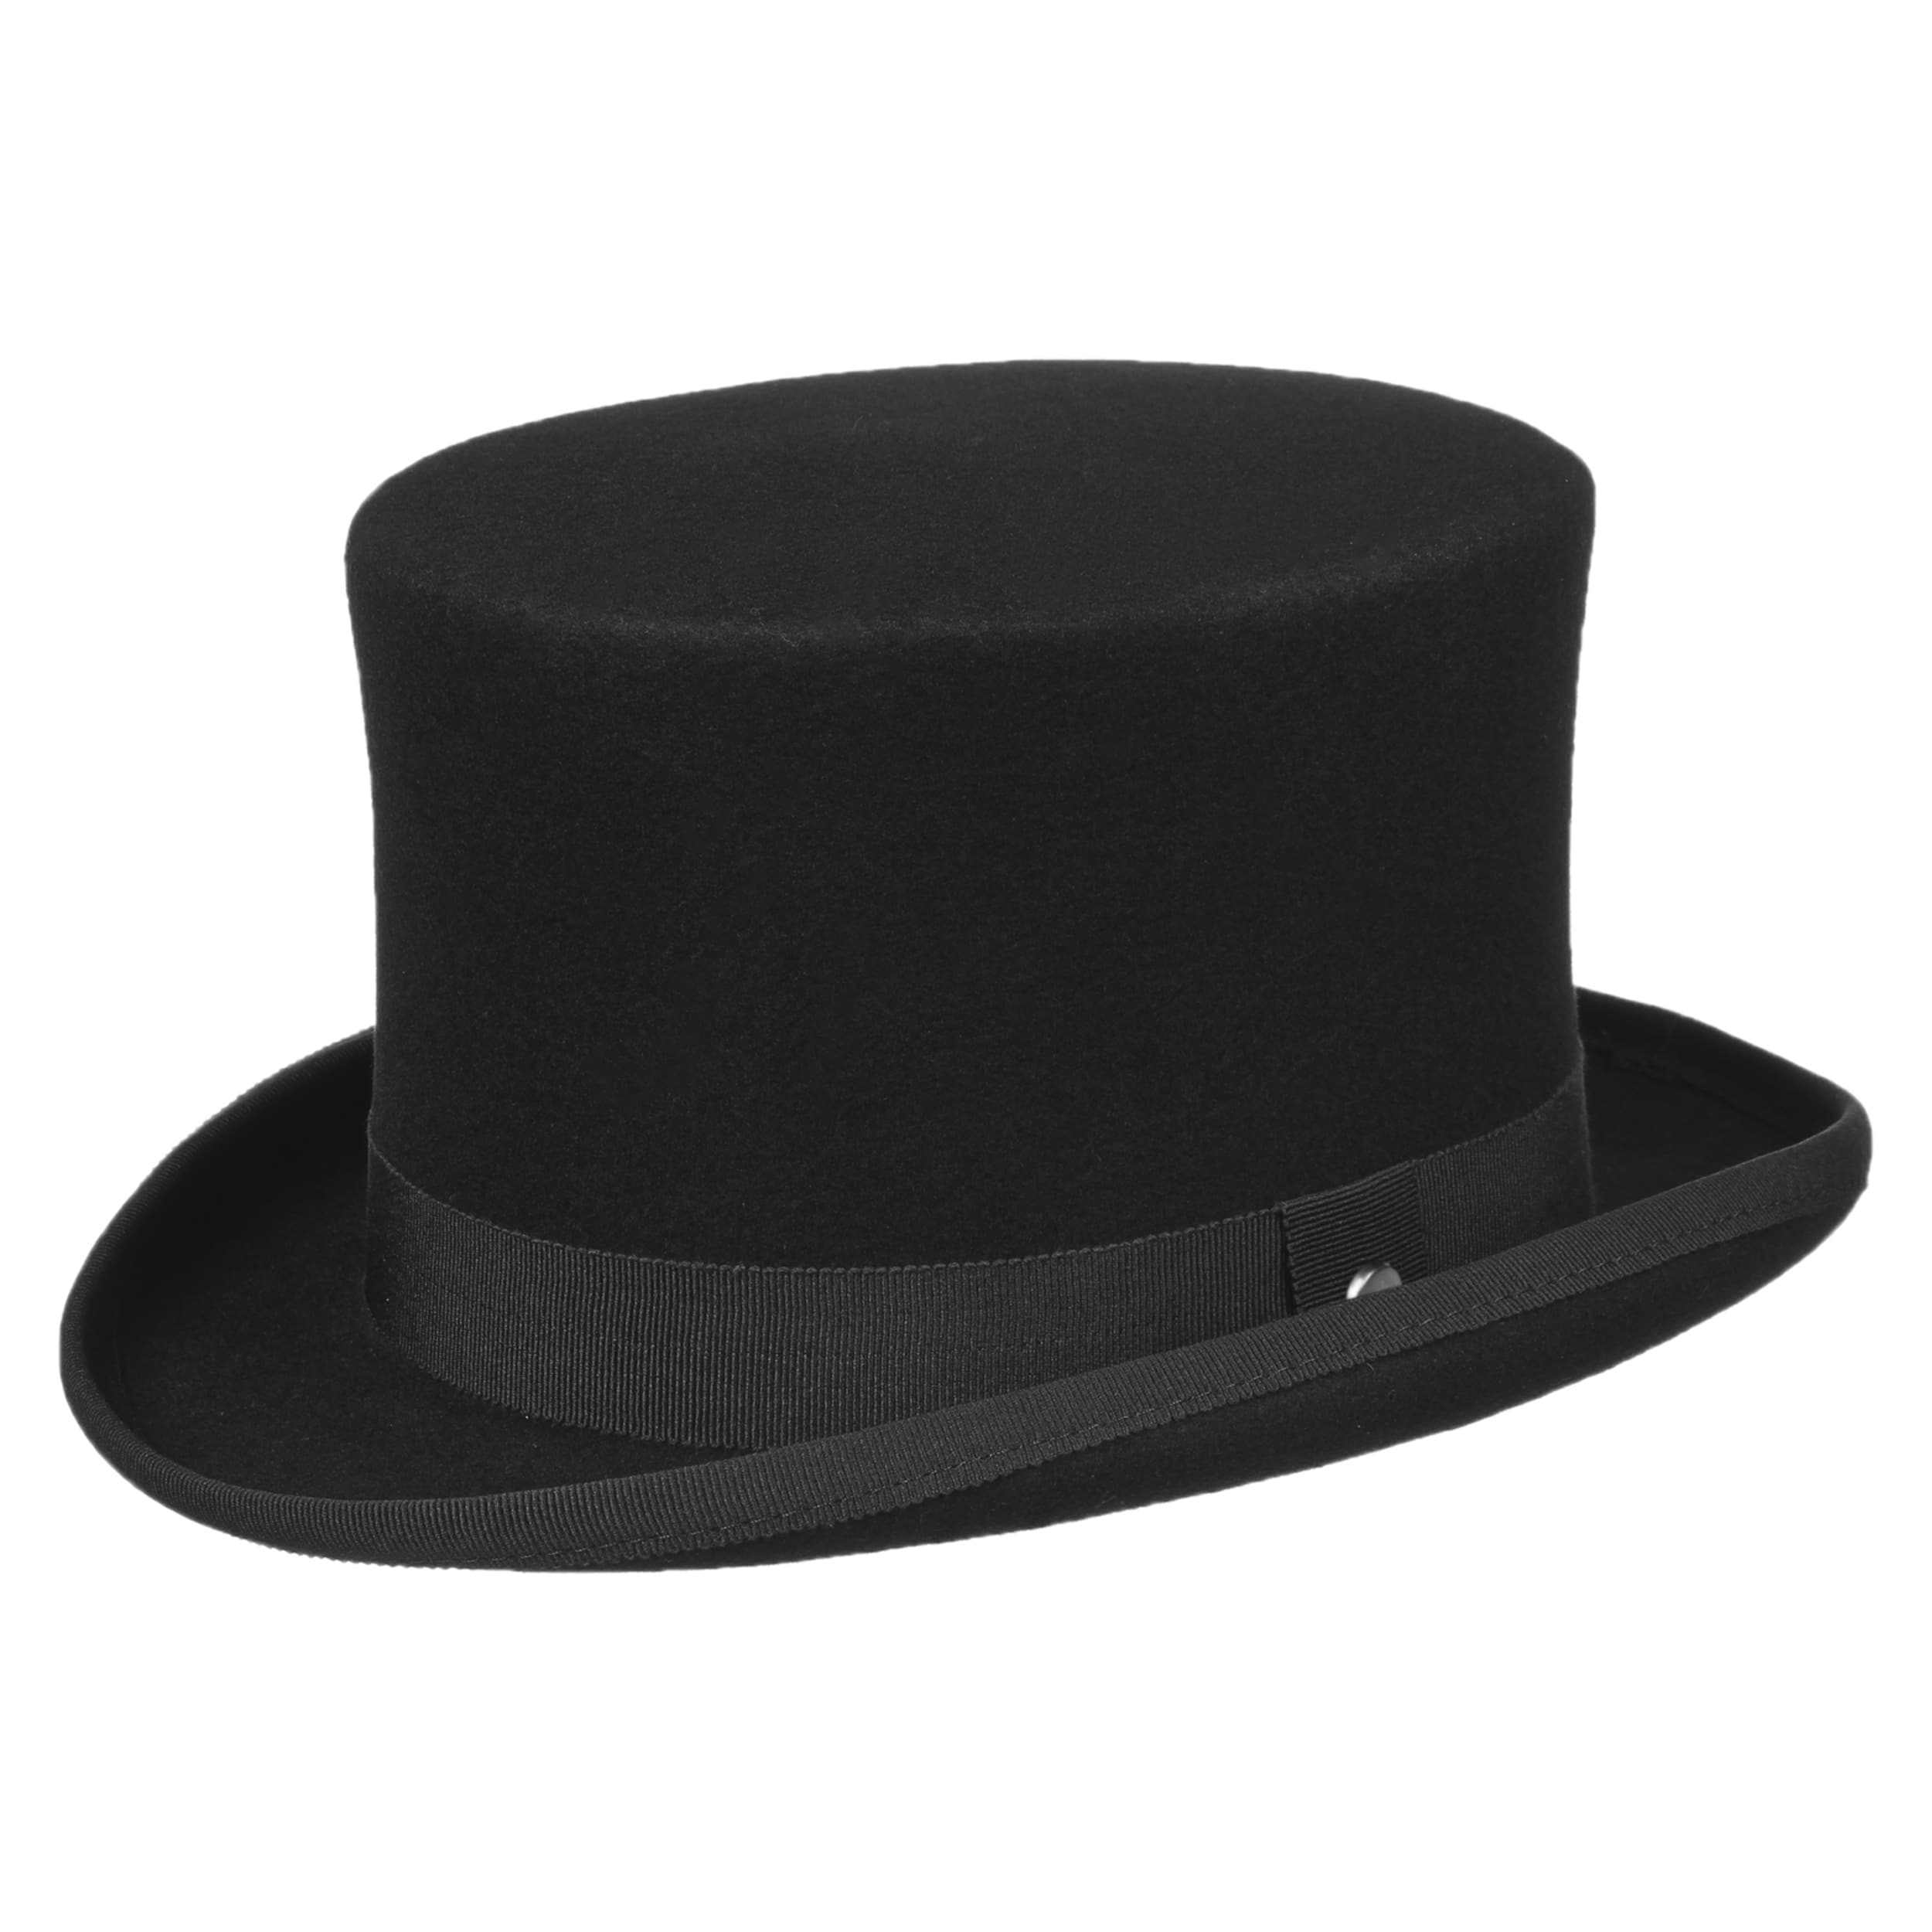 Wool Felt Top Hat by Lierys - 116,95 £